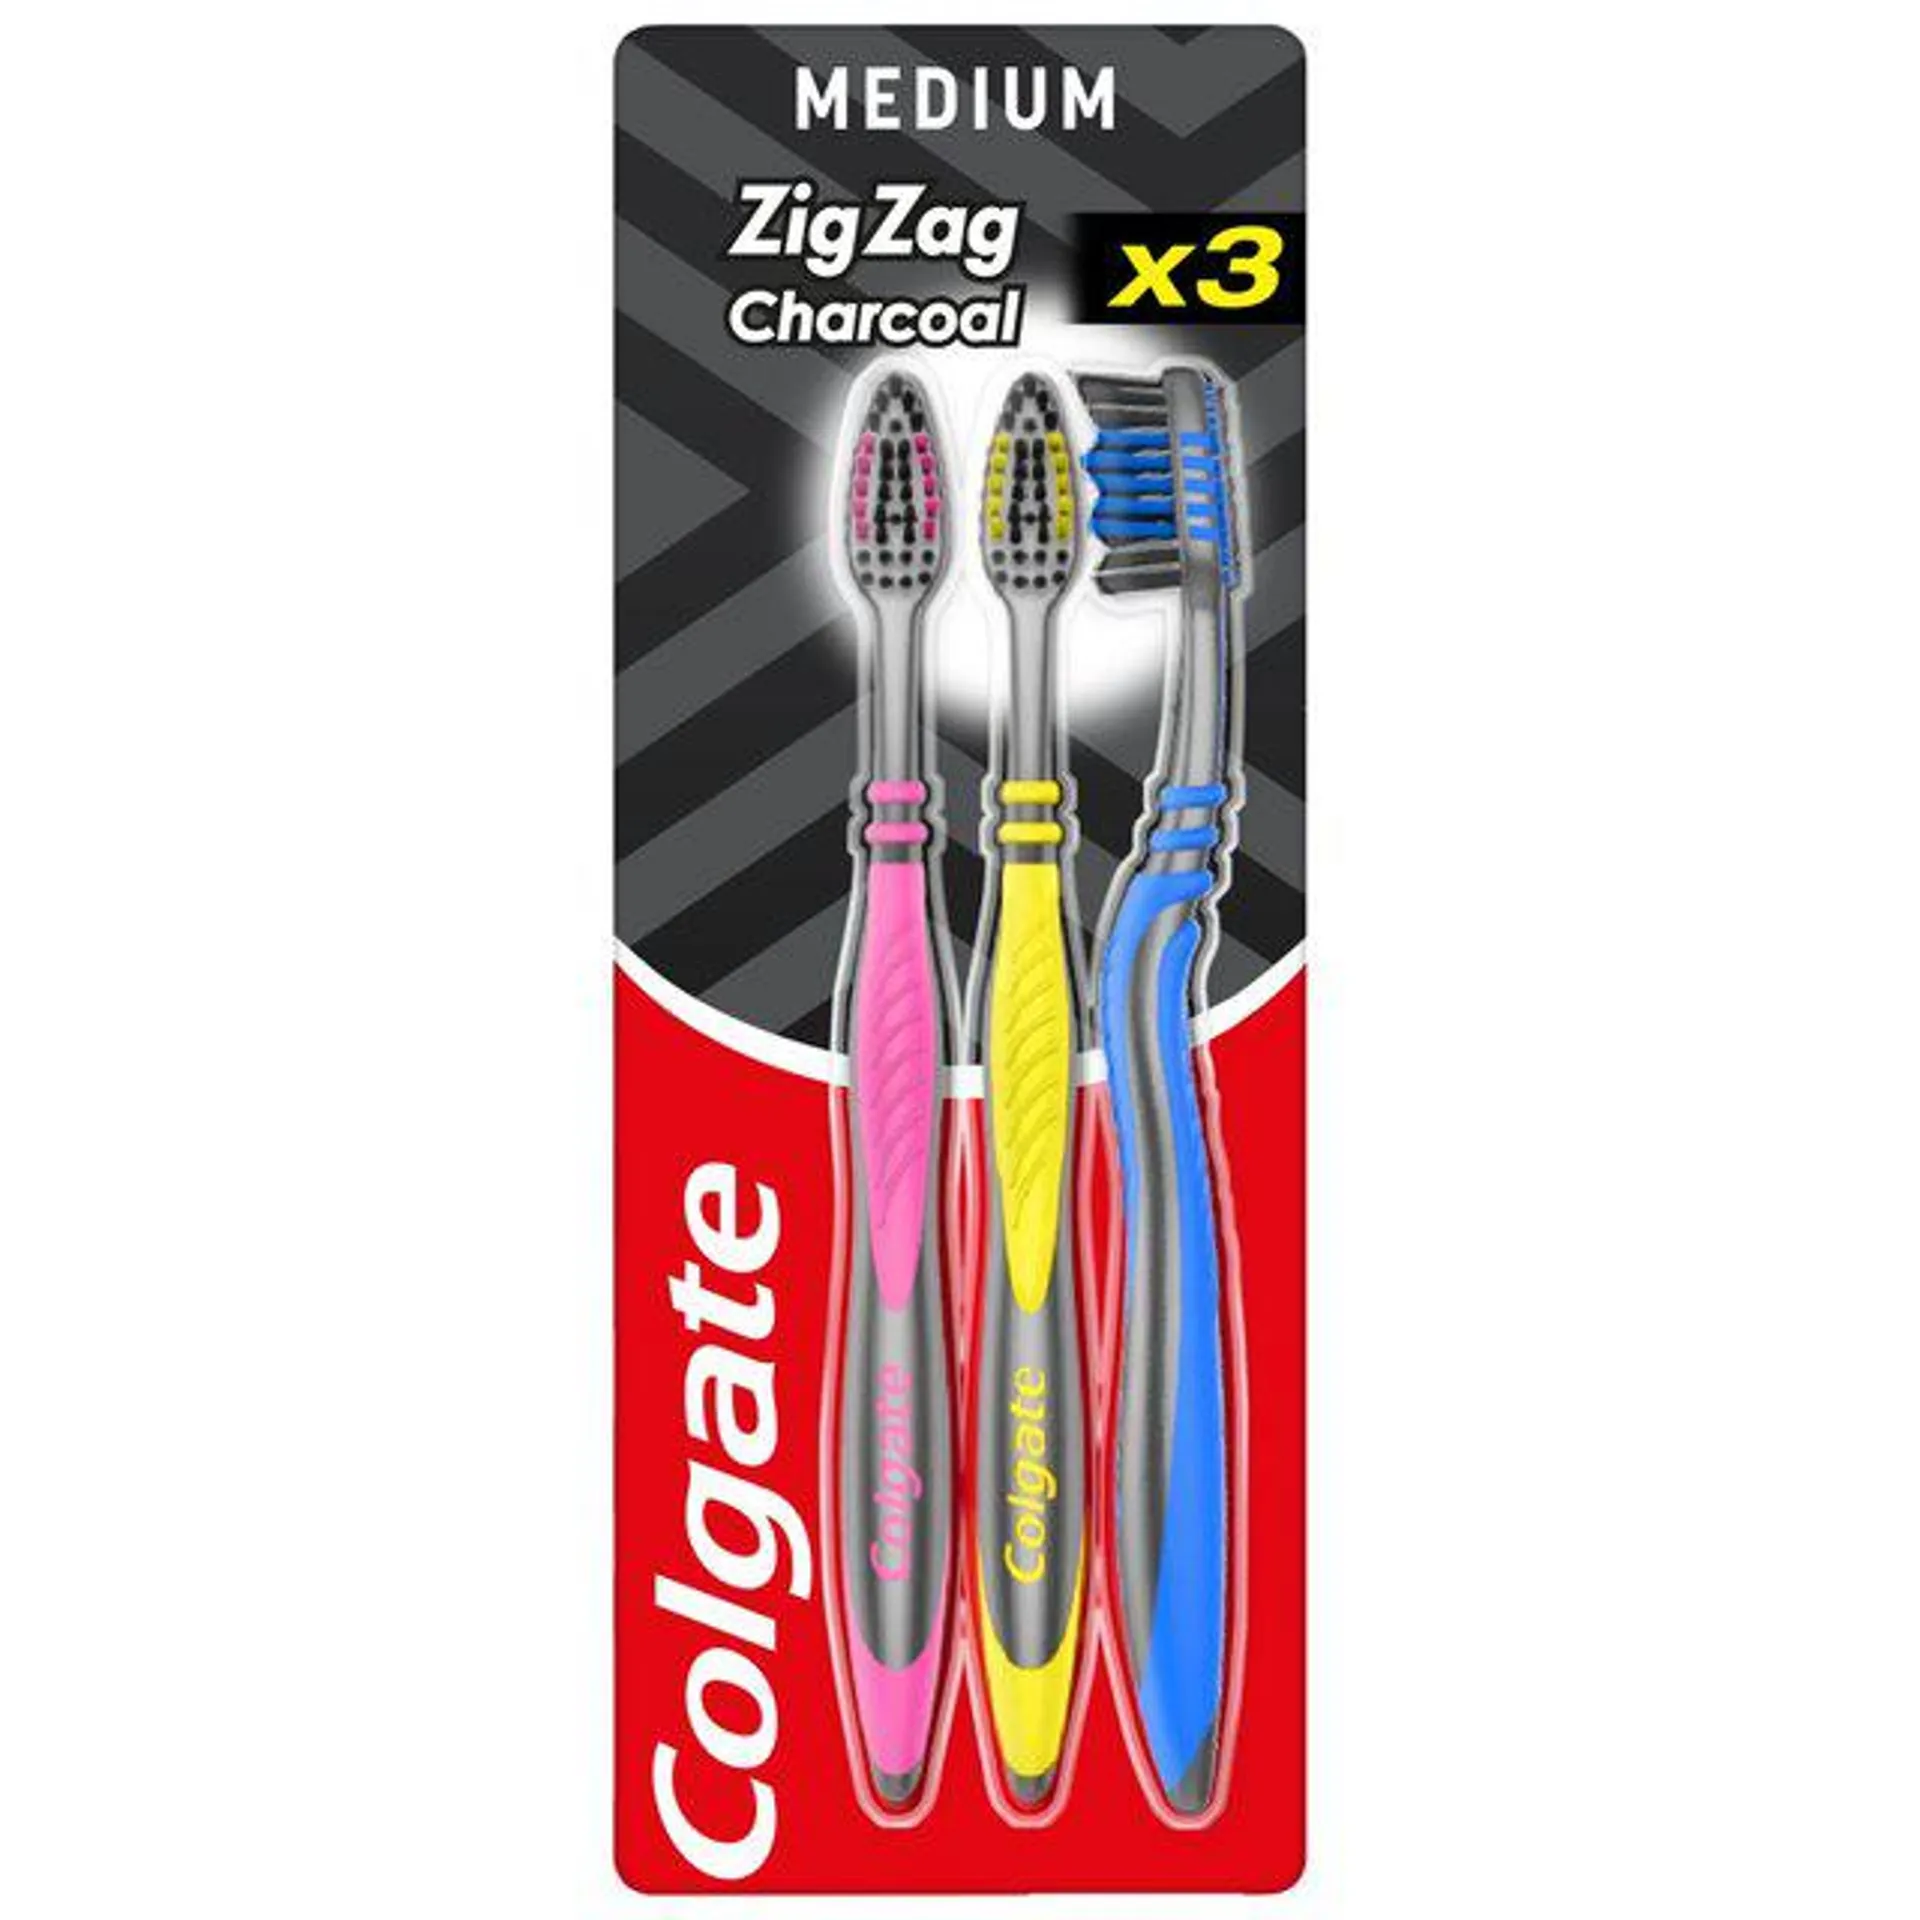 Colgate ZigZag Black Medium Toothbrush 3 per pack